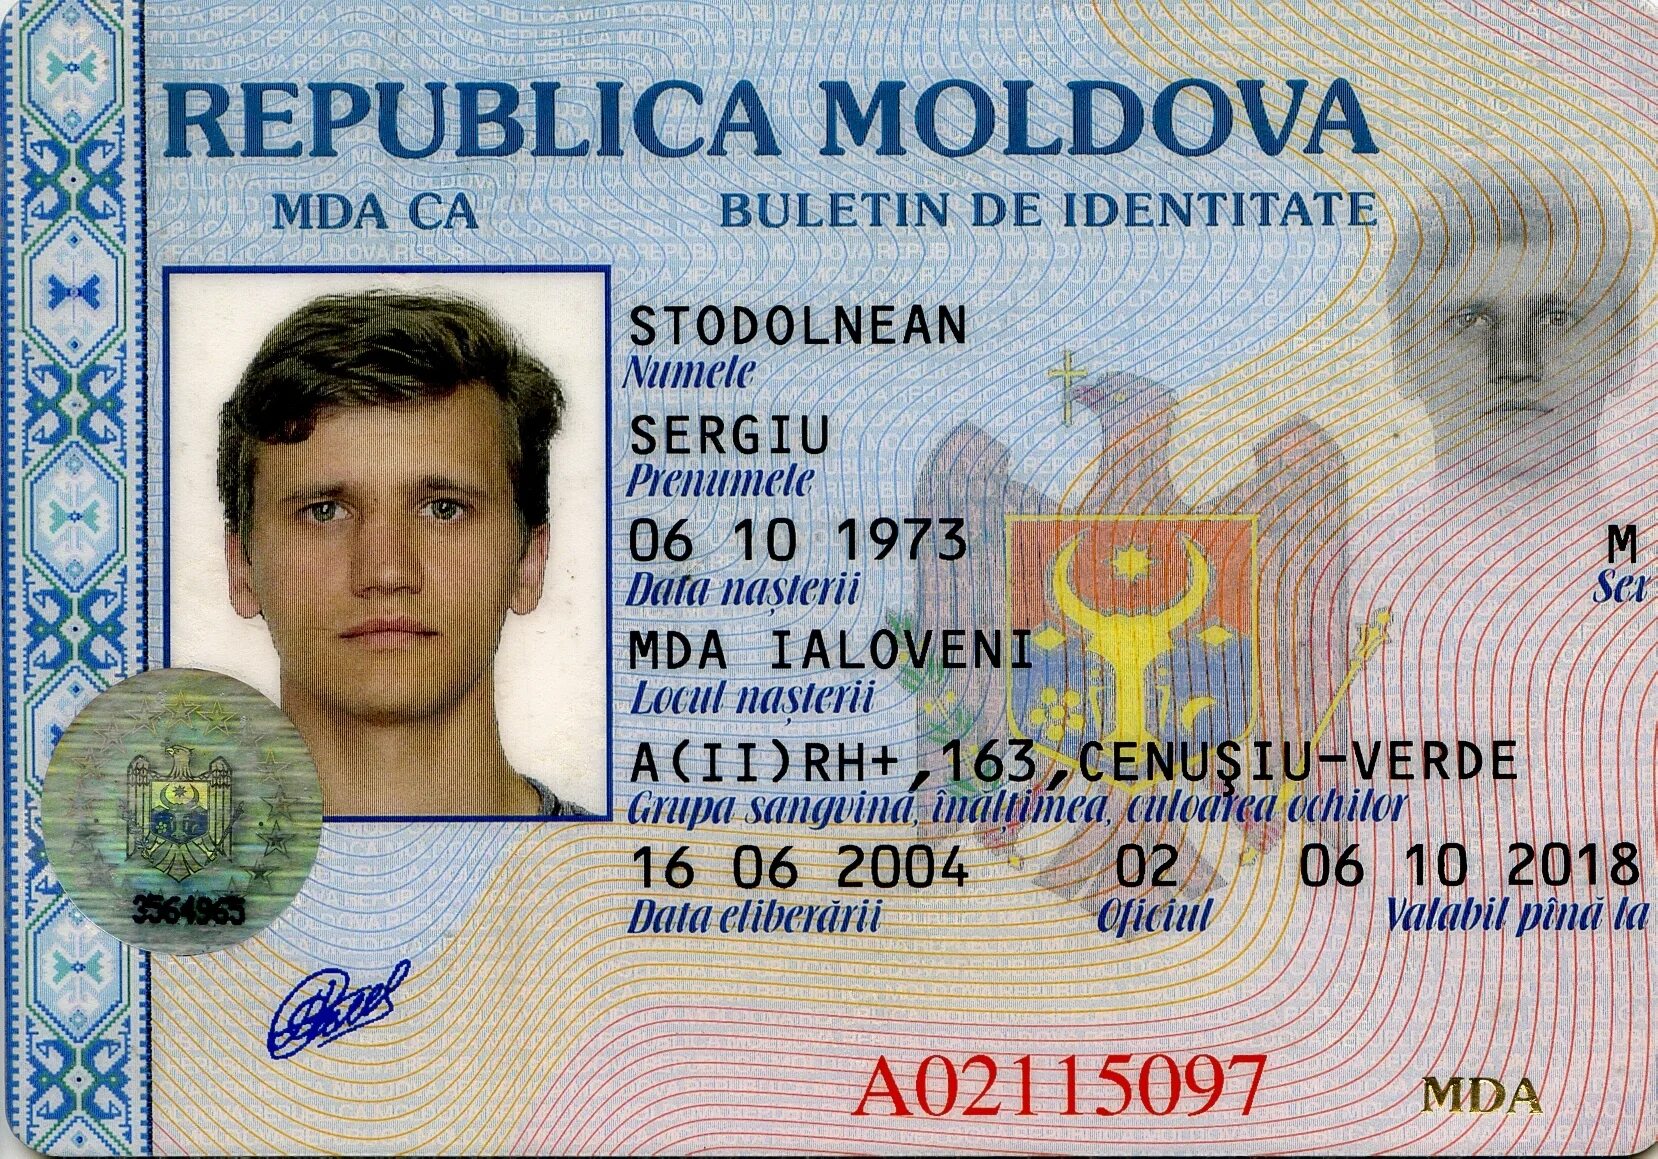 Гражданин республики молдова